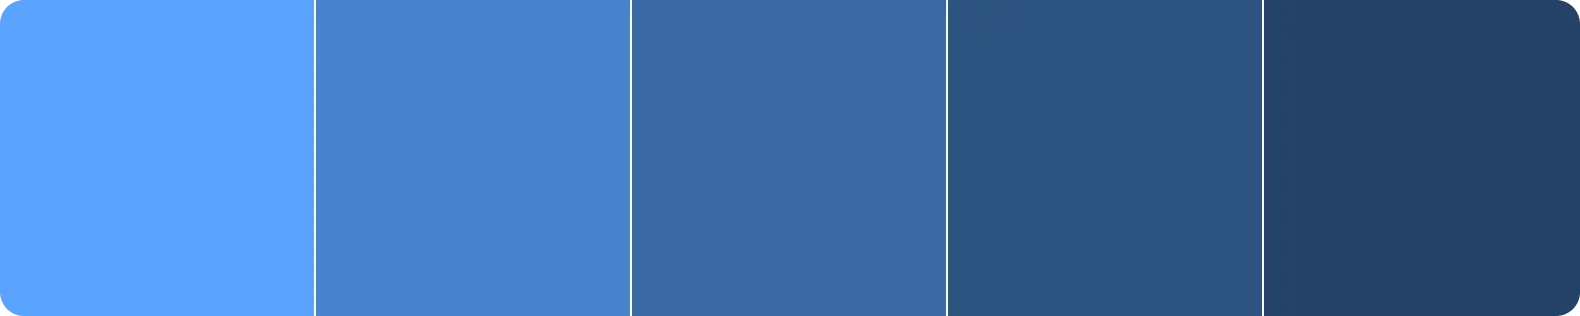 Palette de couleurs montrant différents sades de la même couleur de bleu.